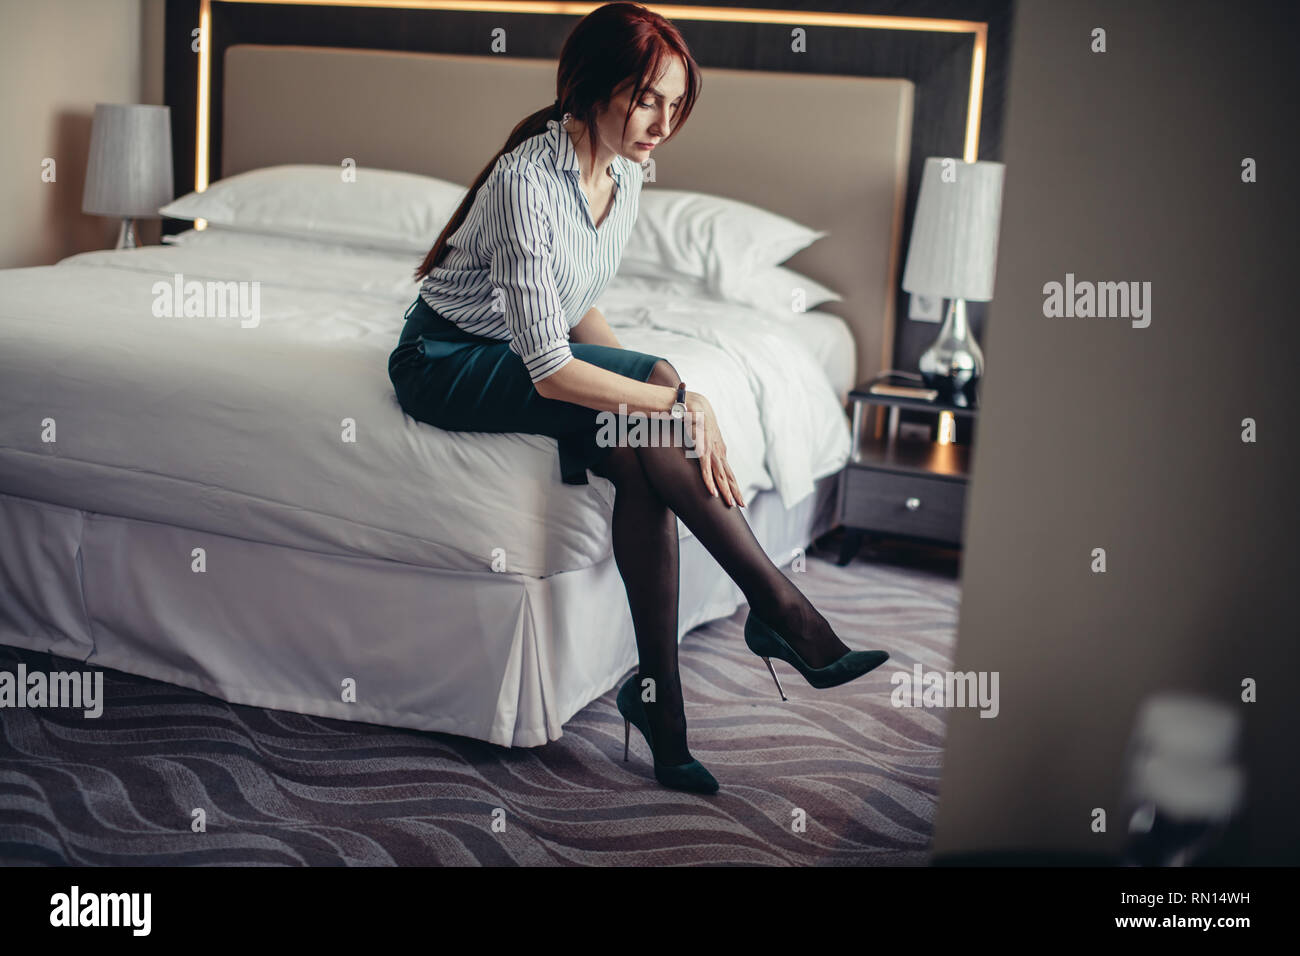 Junge weibliche Chef Assistant setzt sich auf Ihren High Heel Schuhe beim  Sitzen auf dem Bett im Schlafzimmer mit luxuriösem Interieur  Stockfotografie - Alamy